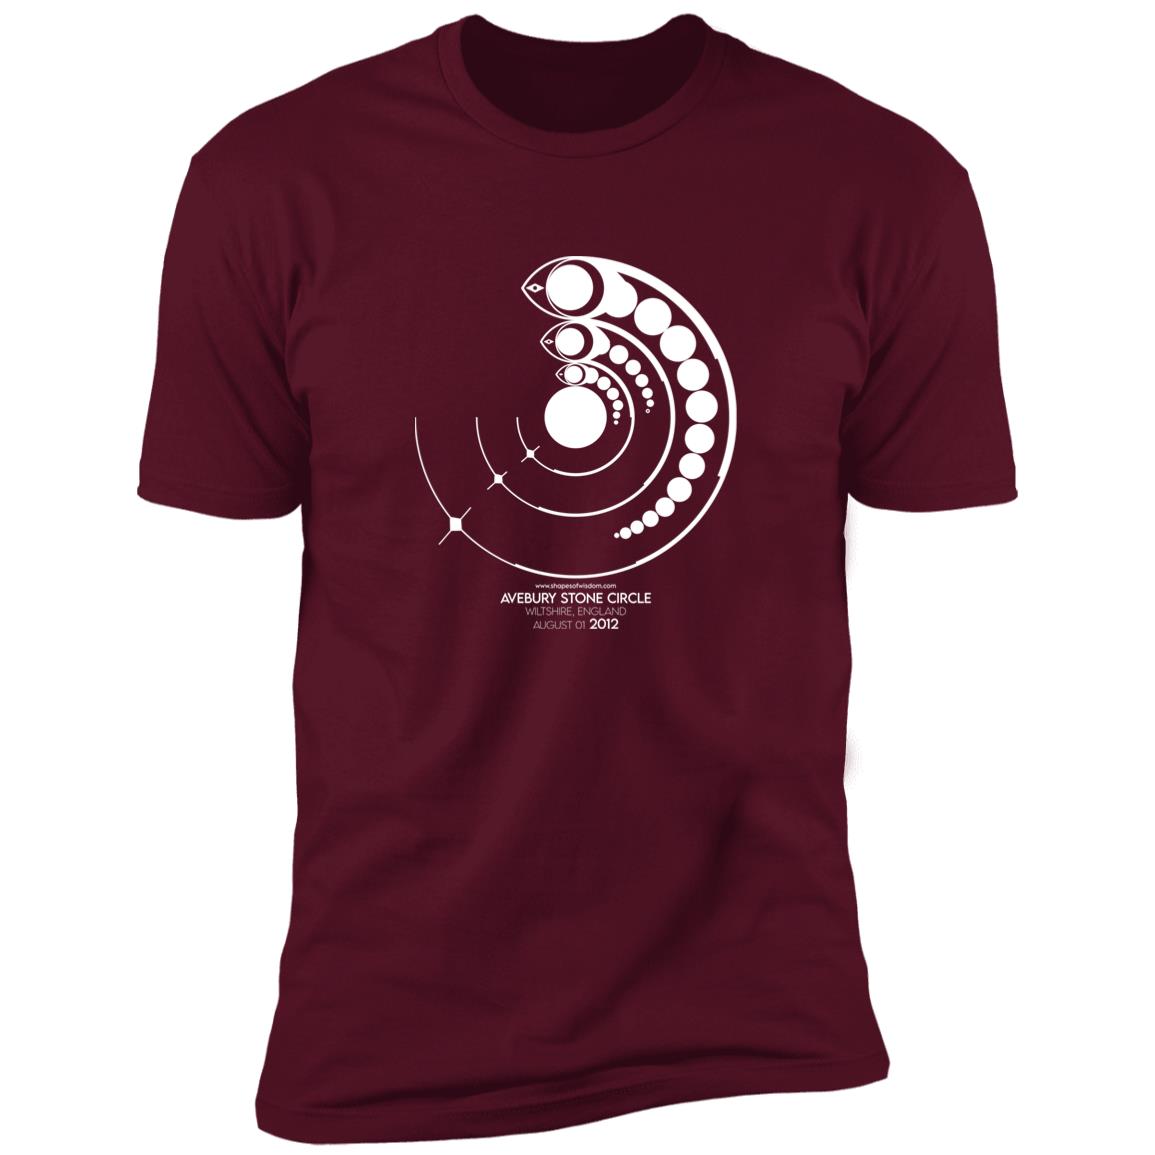 Crop Circle Premium T-Shirt - Avebury Stone Circle 2